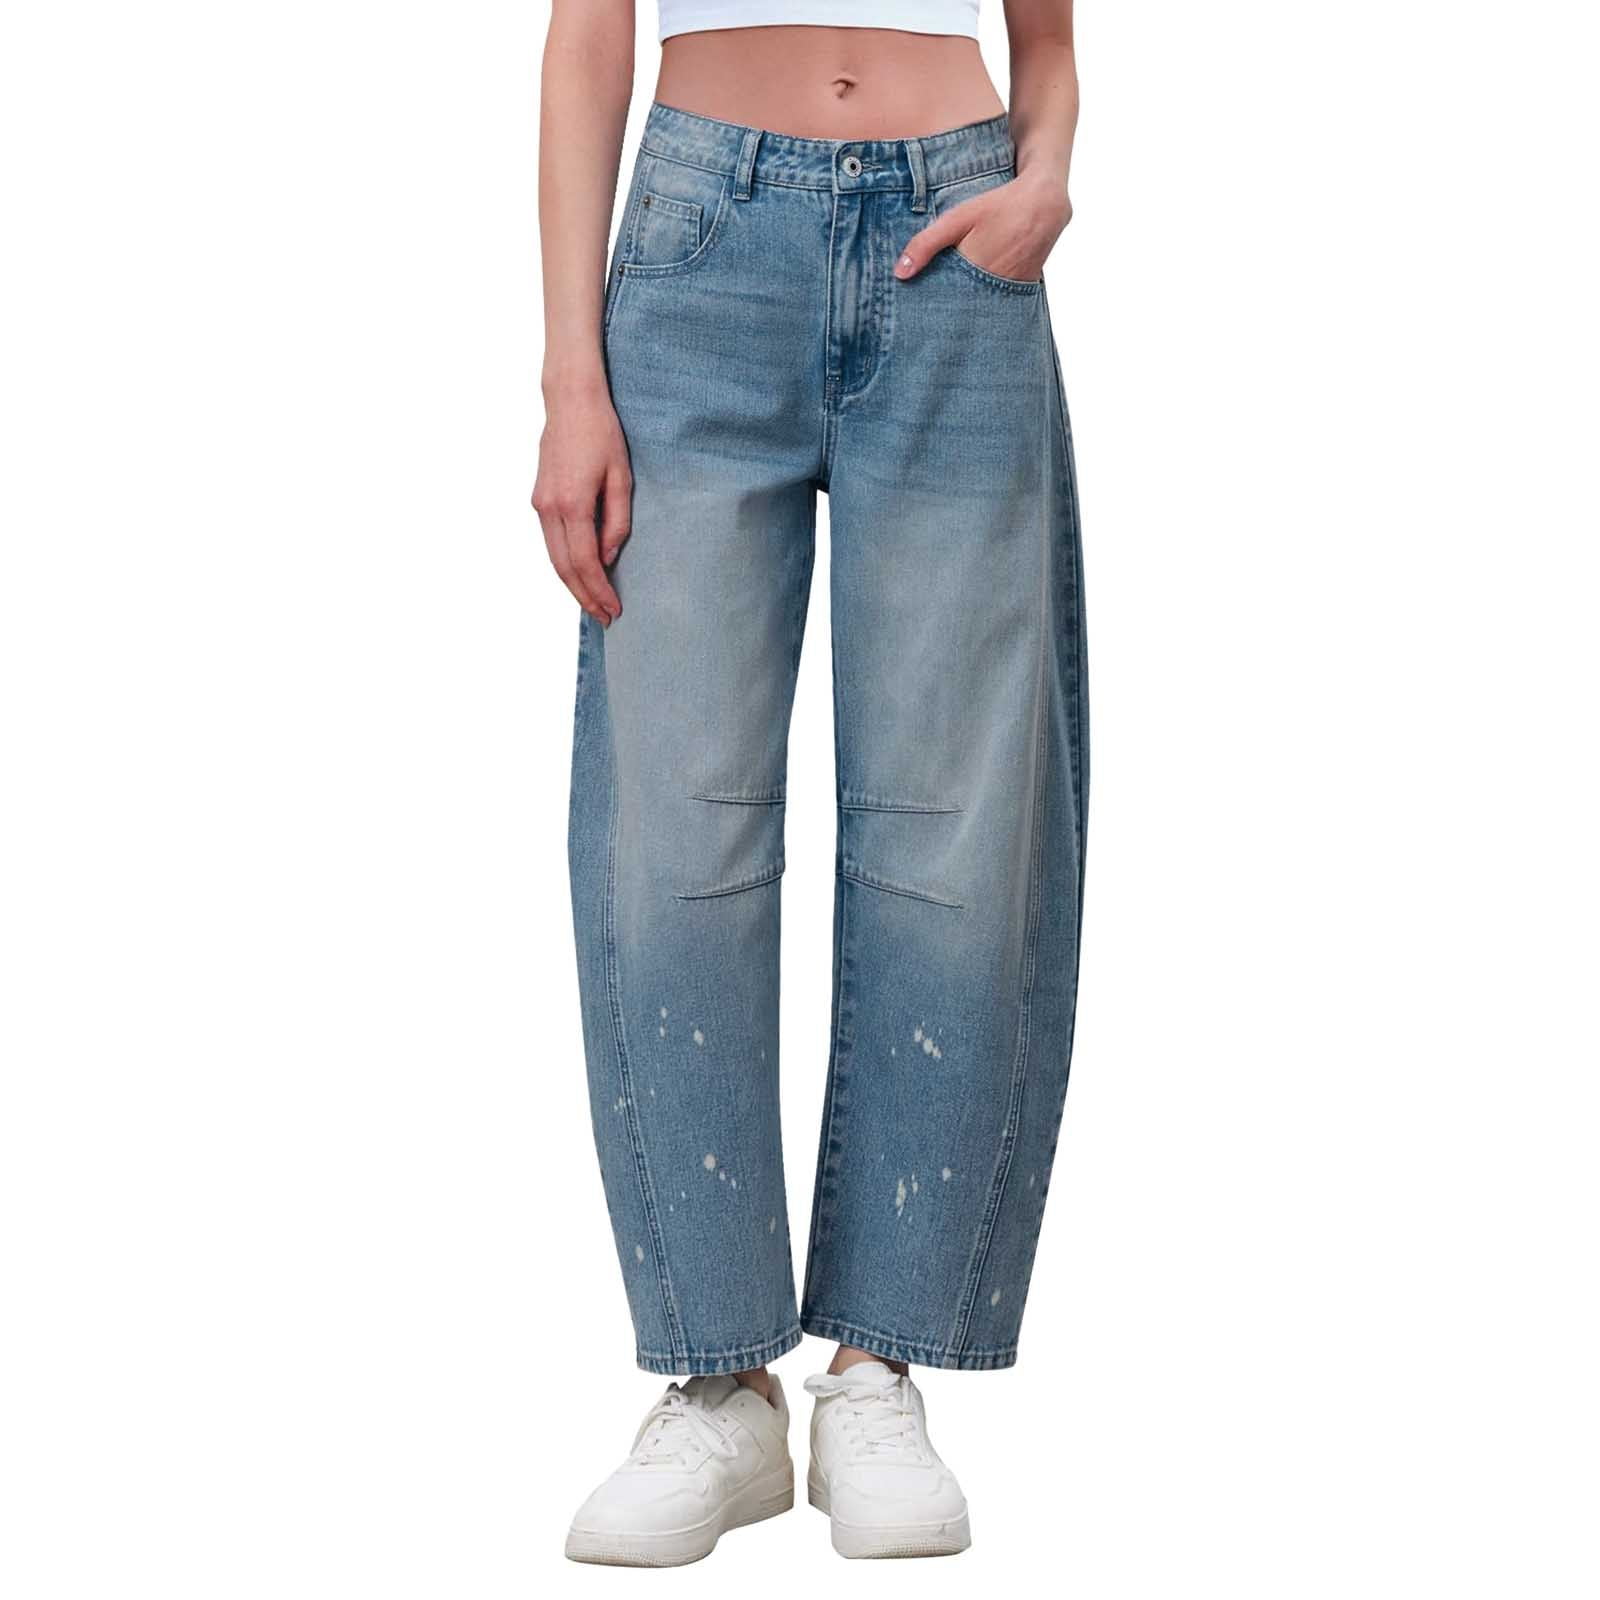 GYUJNB Jeans for Women Mid Rise Barrel Jeans For Women Wide Leg Mid ...